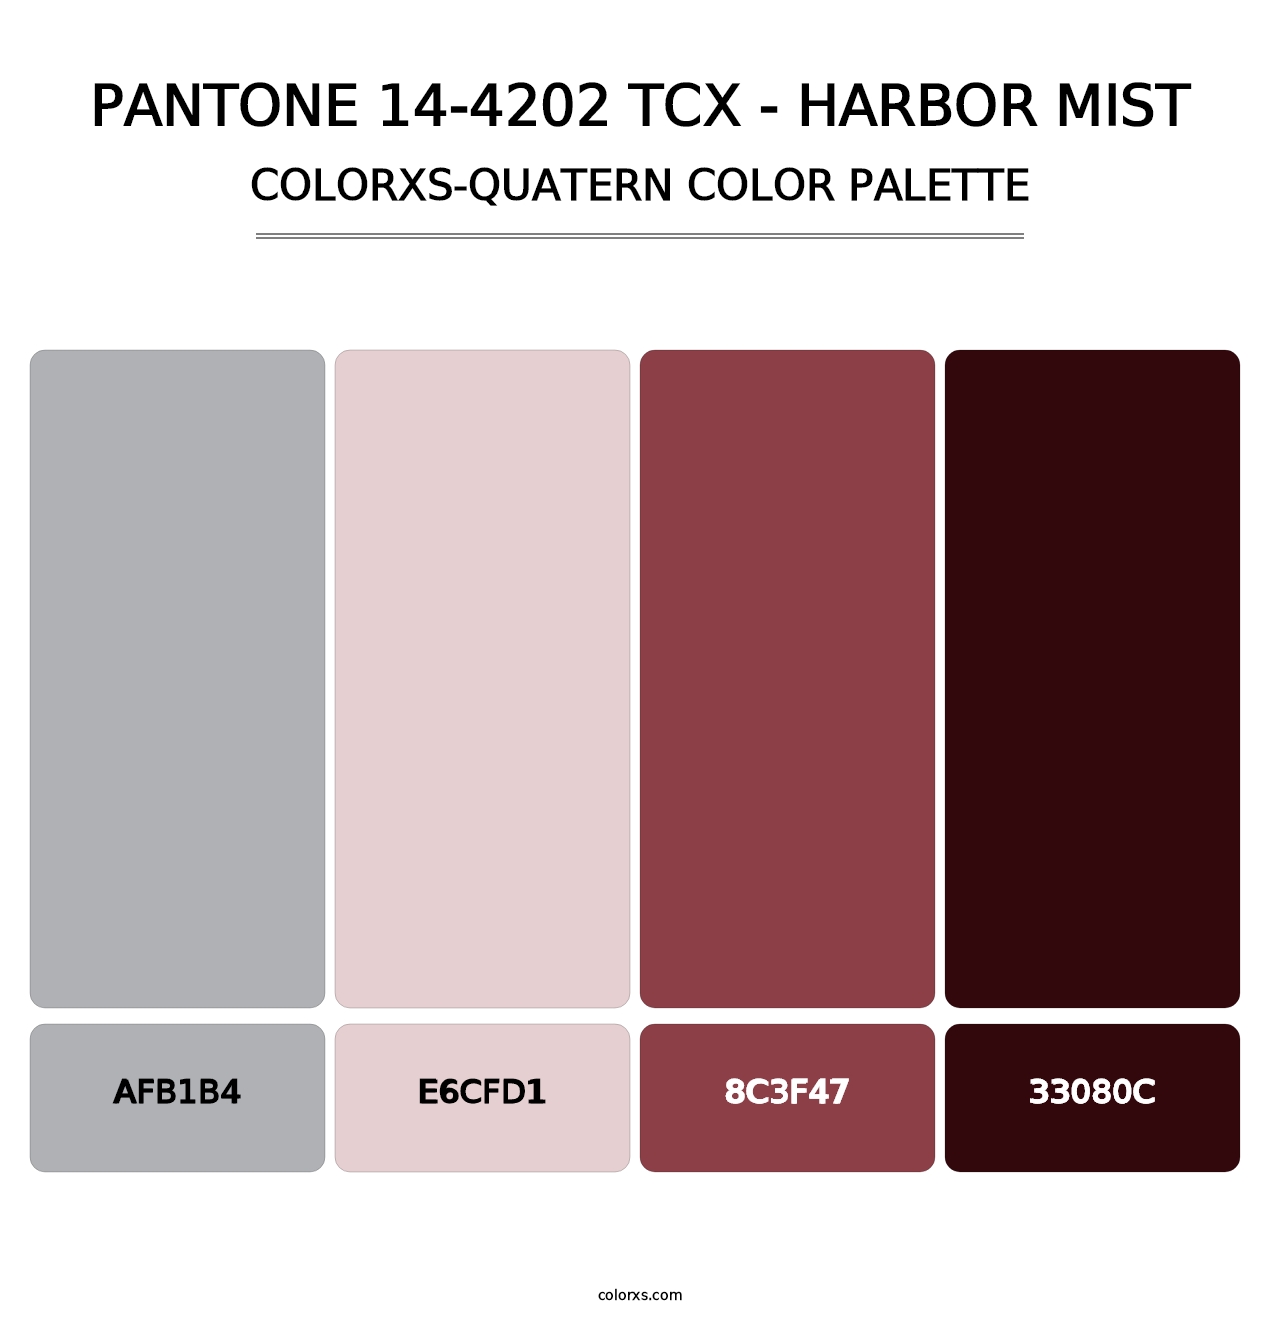 PANTONE 14-4202 TCX - Harbor Mist - Colorxs Quatern Palette